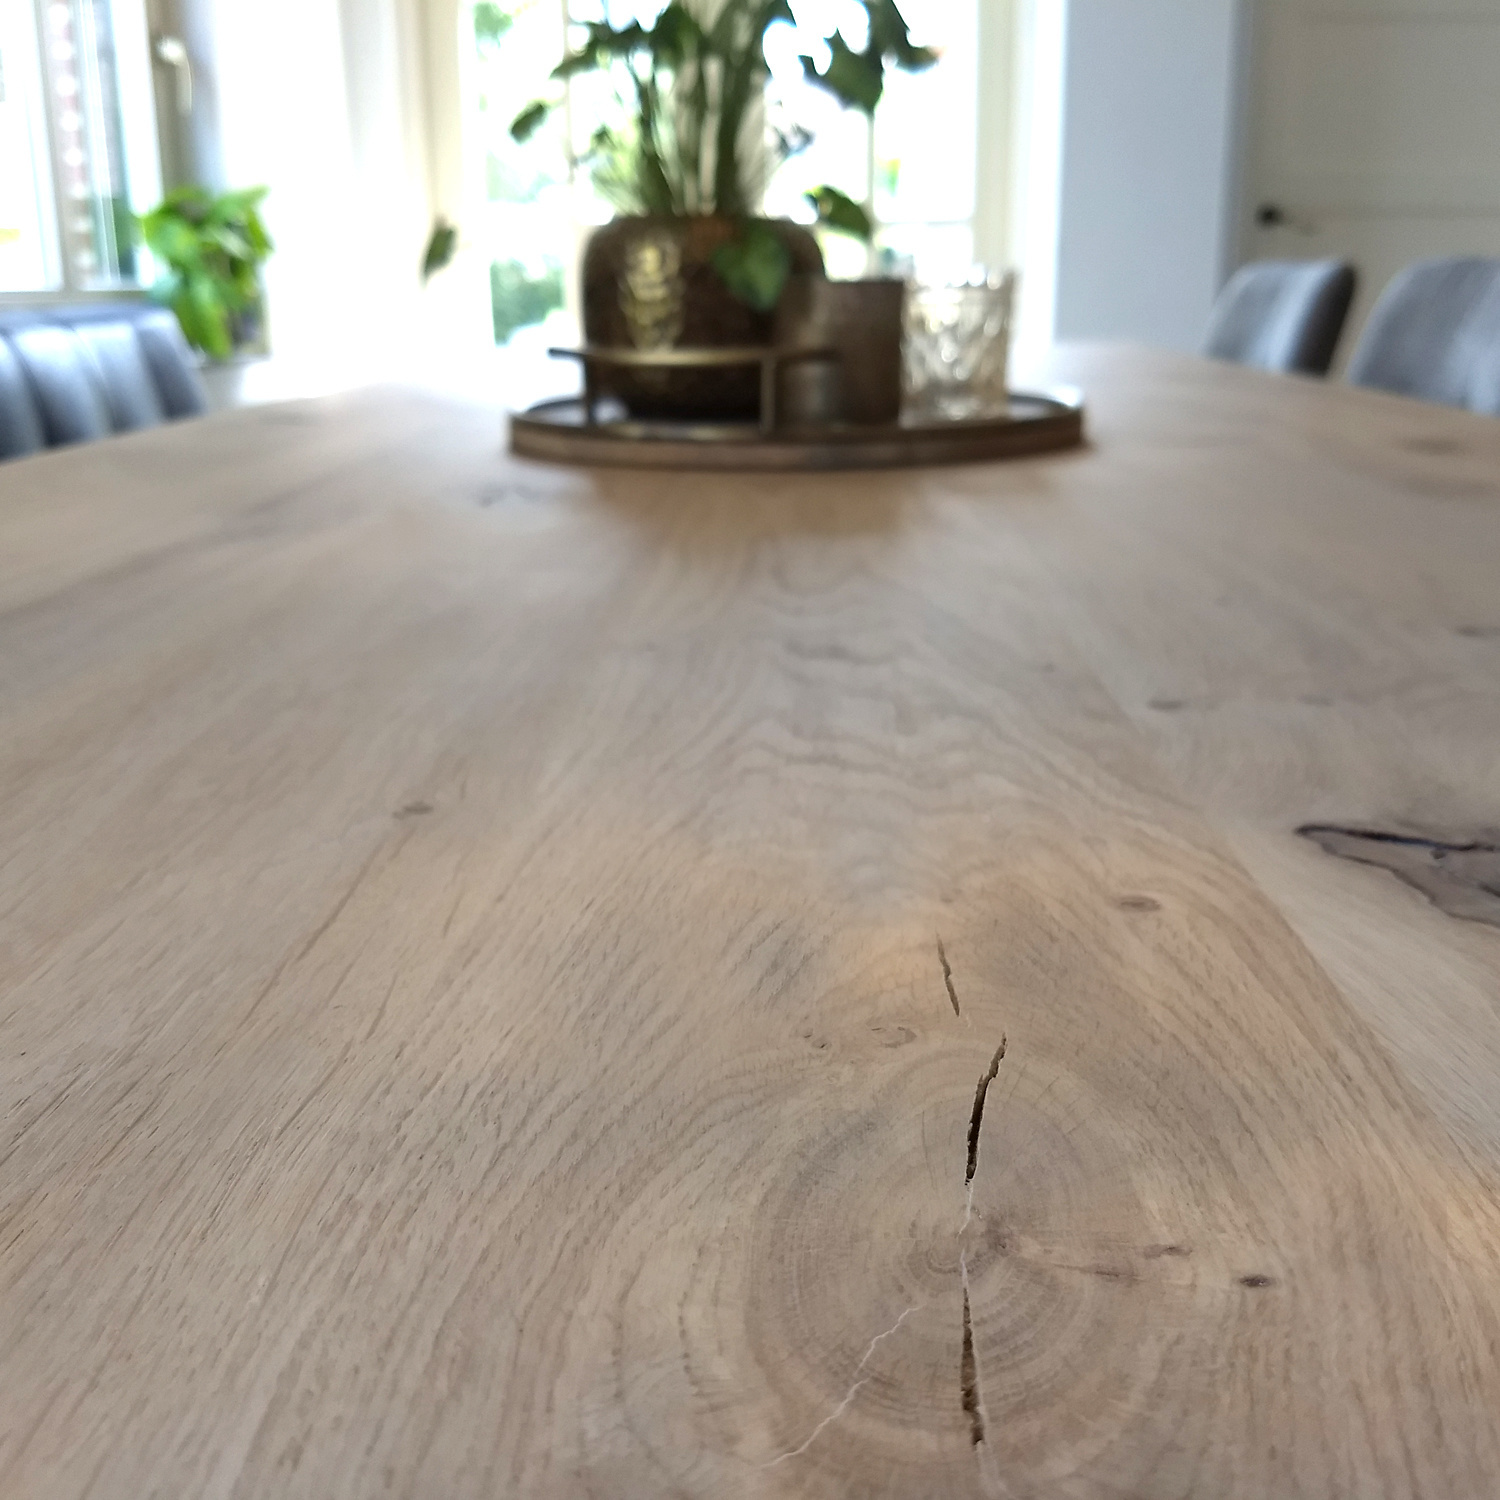  Tischplatte Eiche nach Maß - Aufgedoppelt - 6 cm dick (2-lagig) - Eichenholz rustikal - Eiche Tischplatte massiv - verleimt & künstlich getrocknet (HF 8-12%) - 50-120x50-350 cm